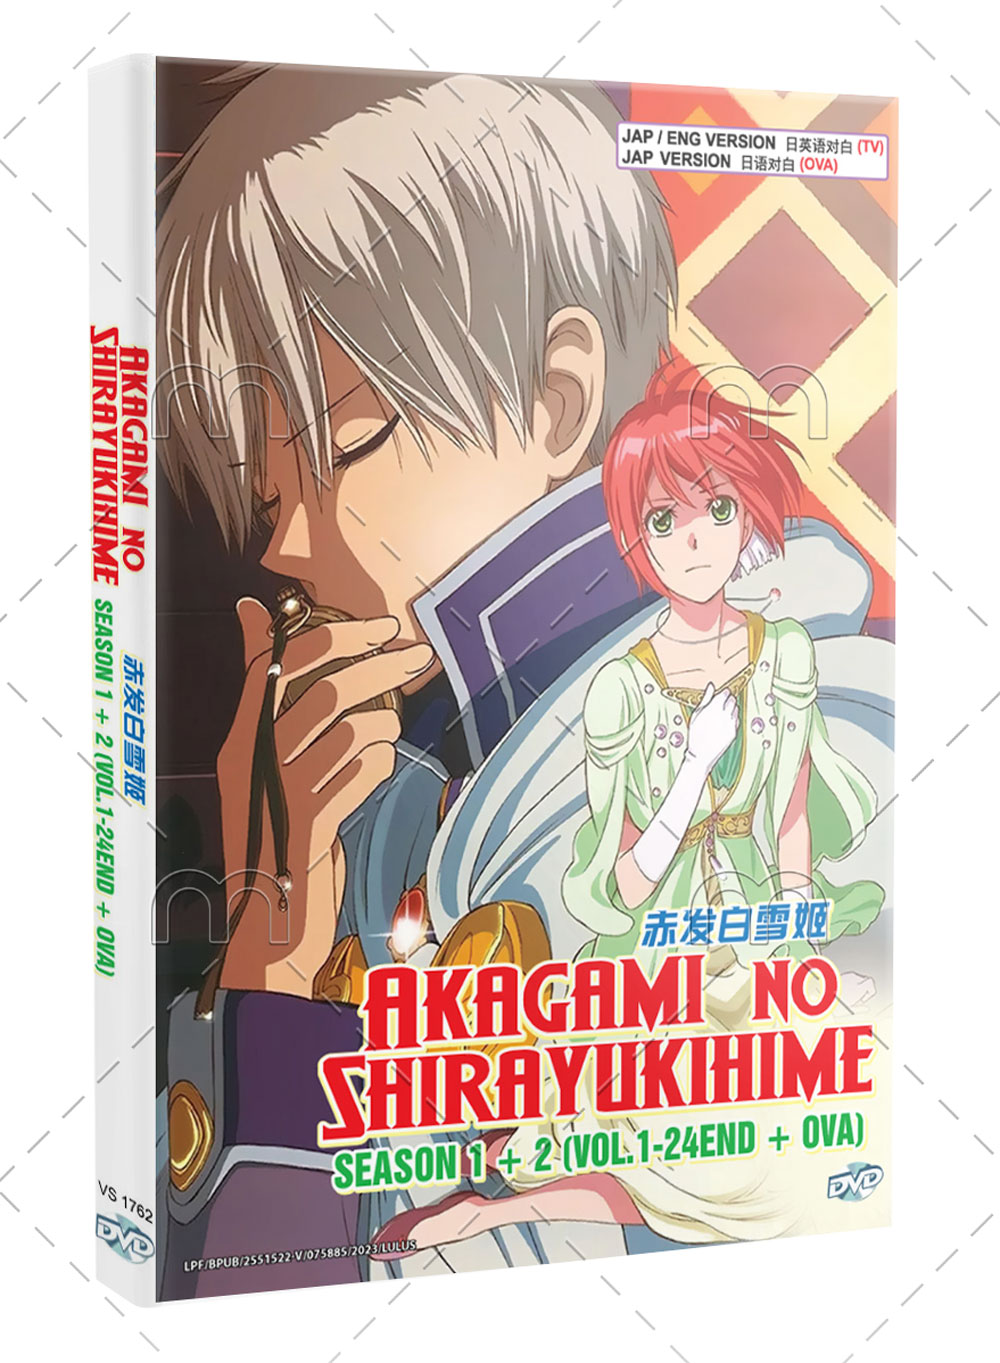 Akagami No Shirayukihime Season 1+2 +OVA (DVD) (2015) Anime